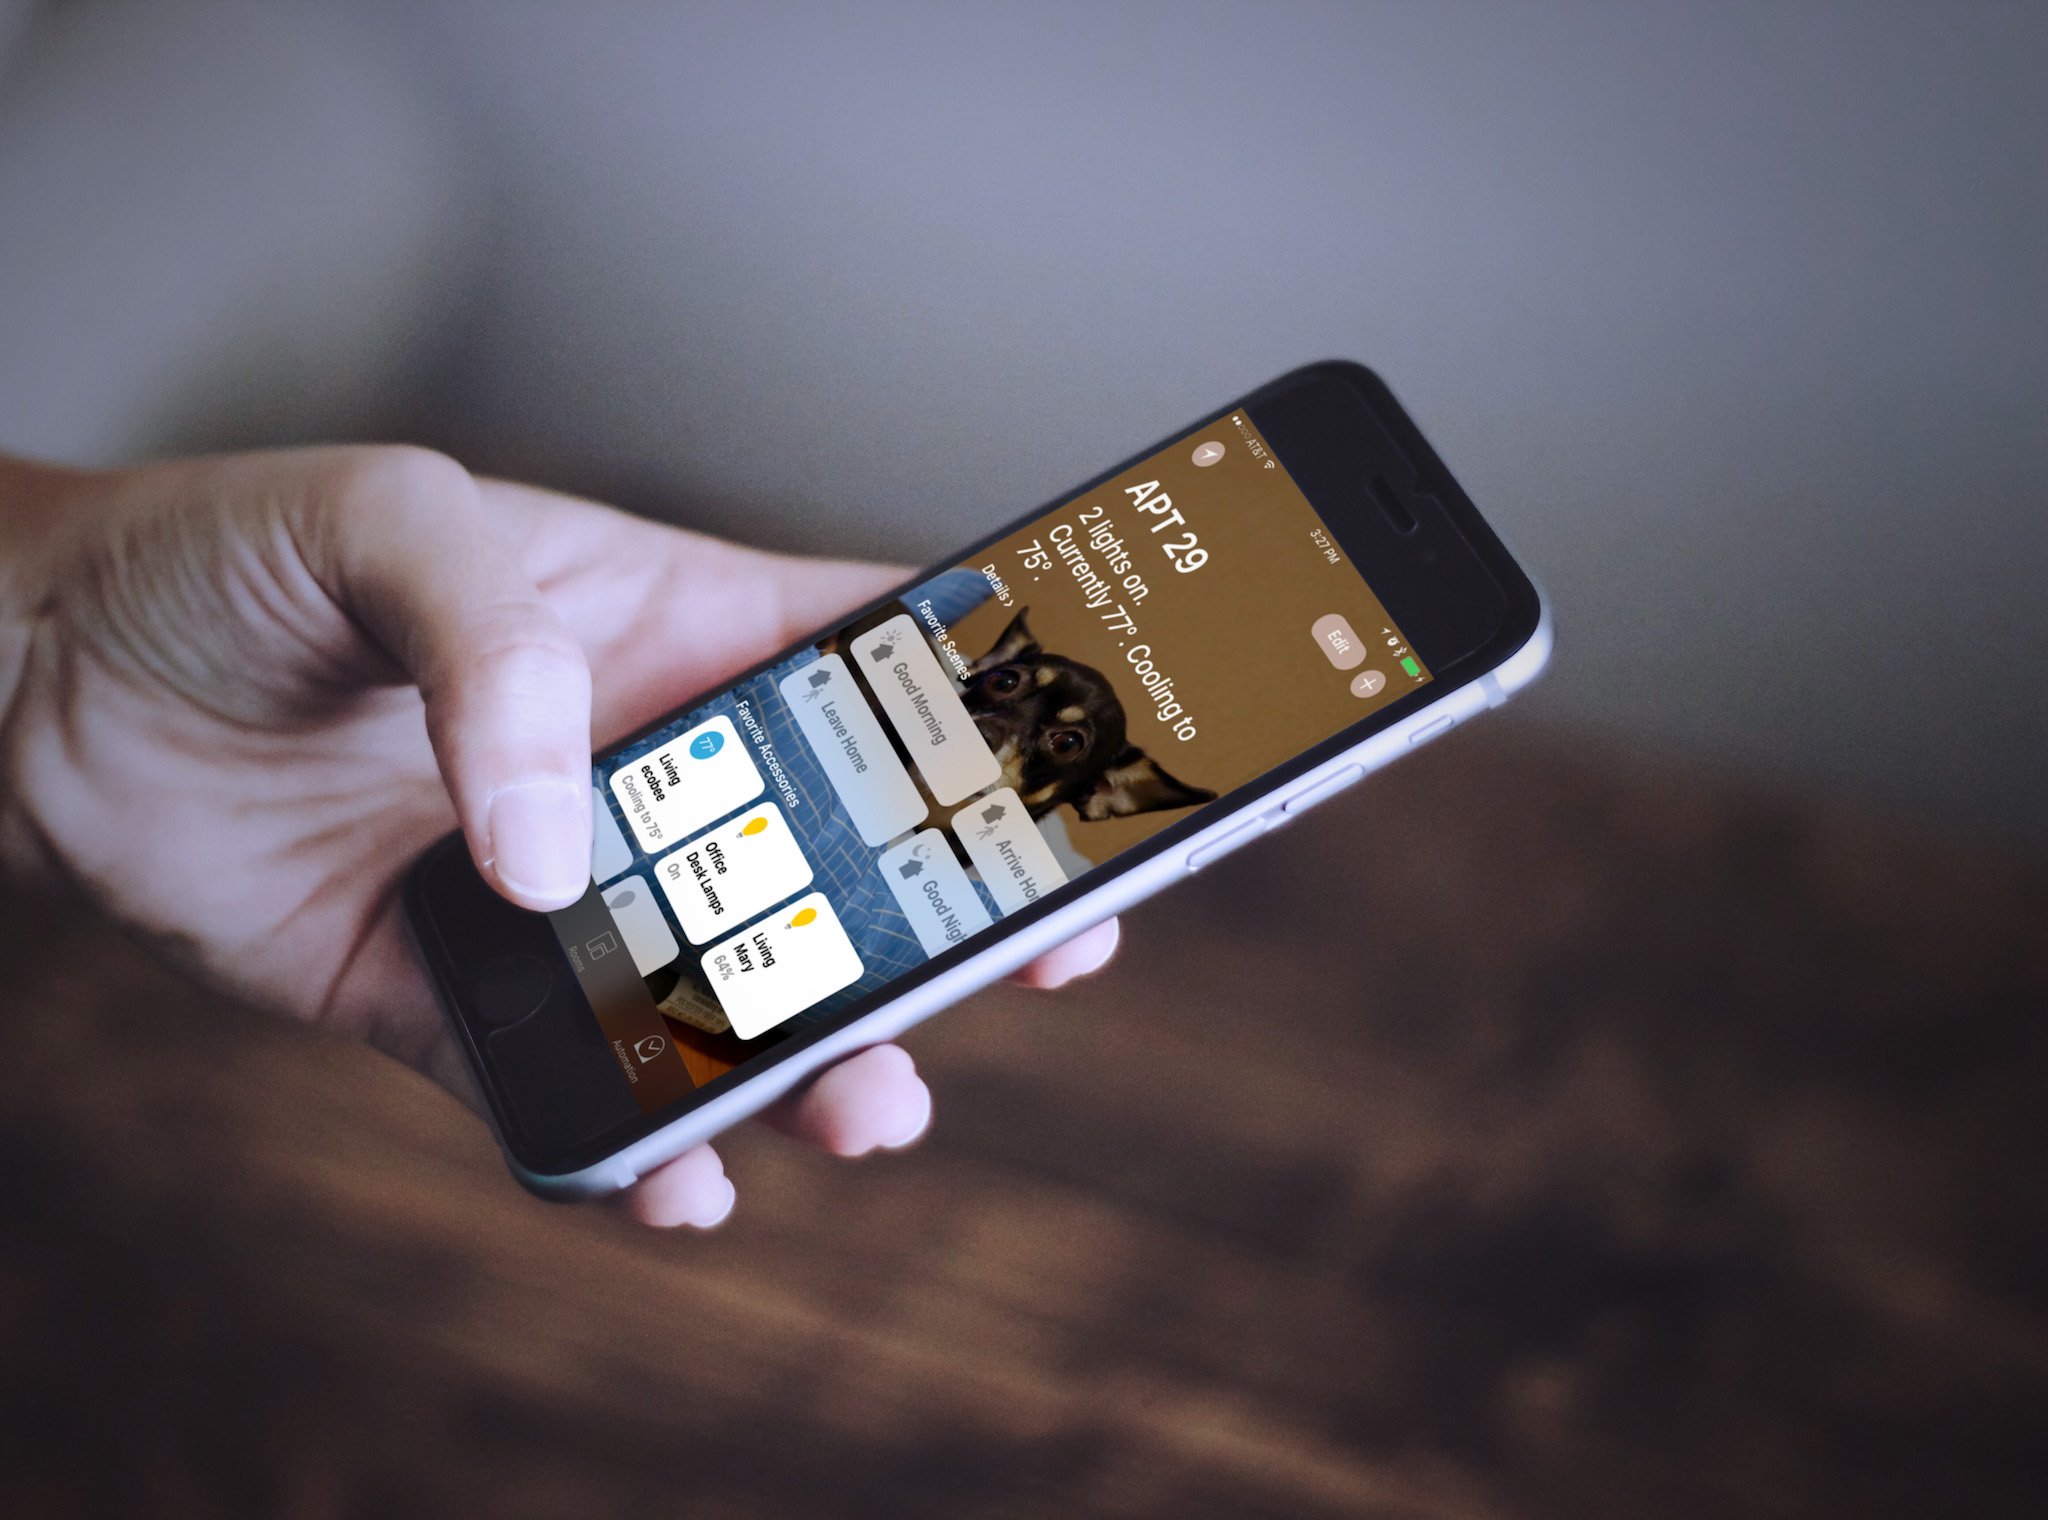 Приложение iOS Home отображается на iPhone, который держится в руке